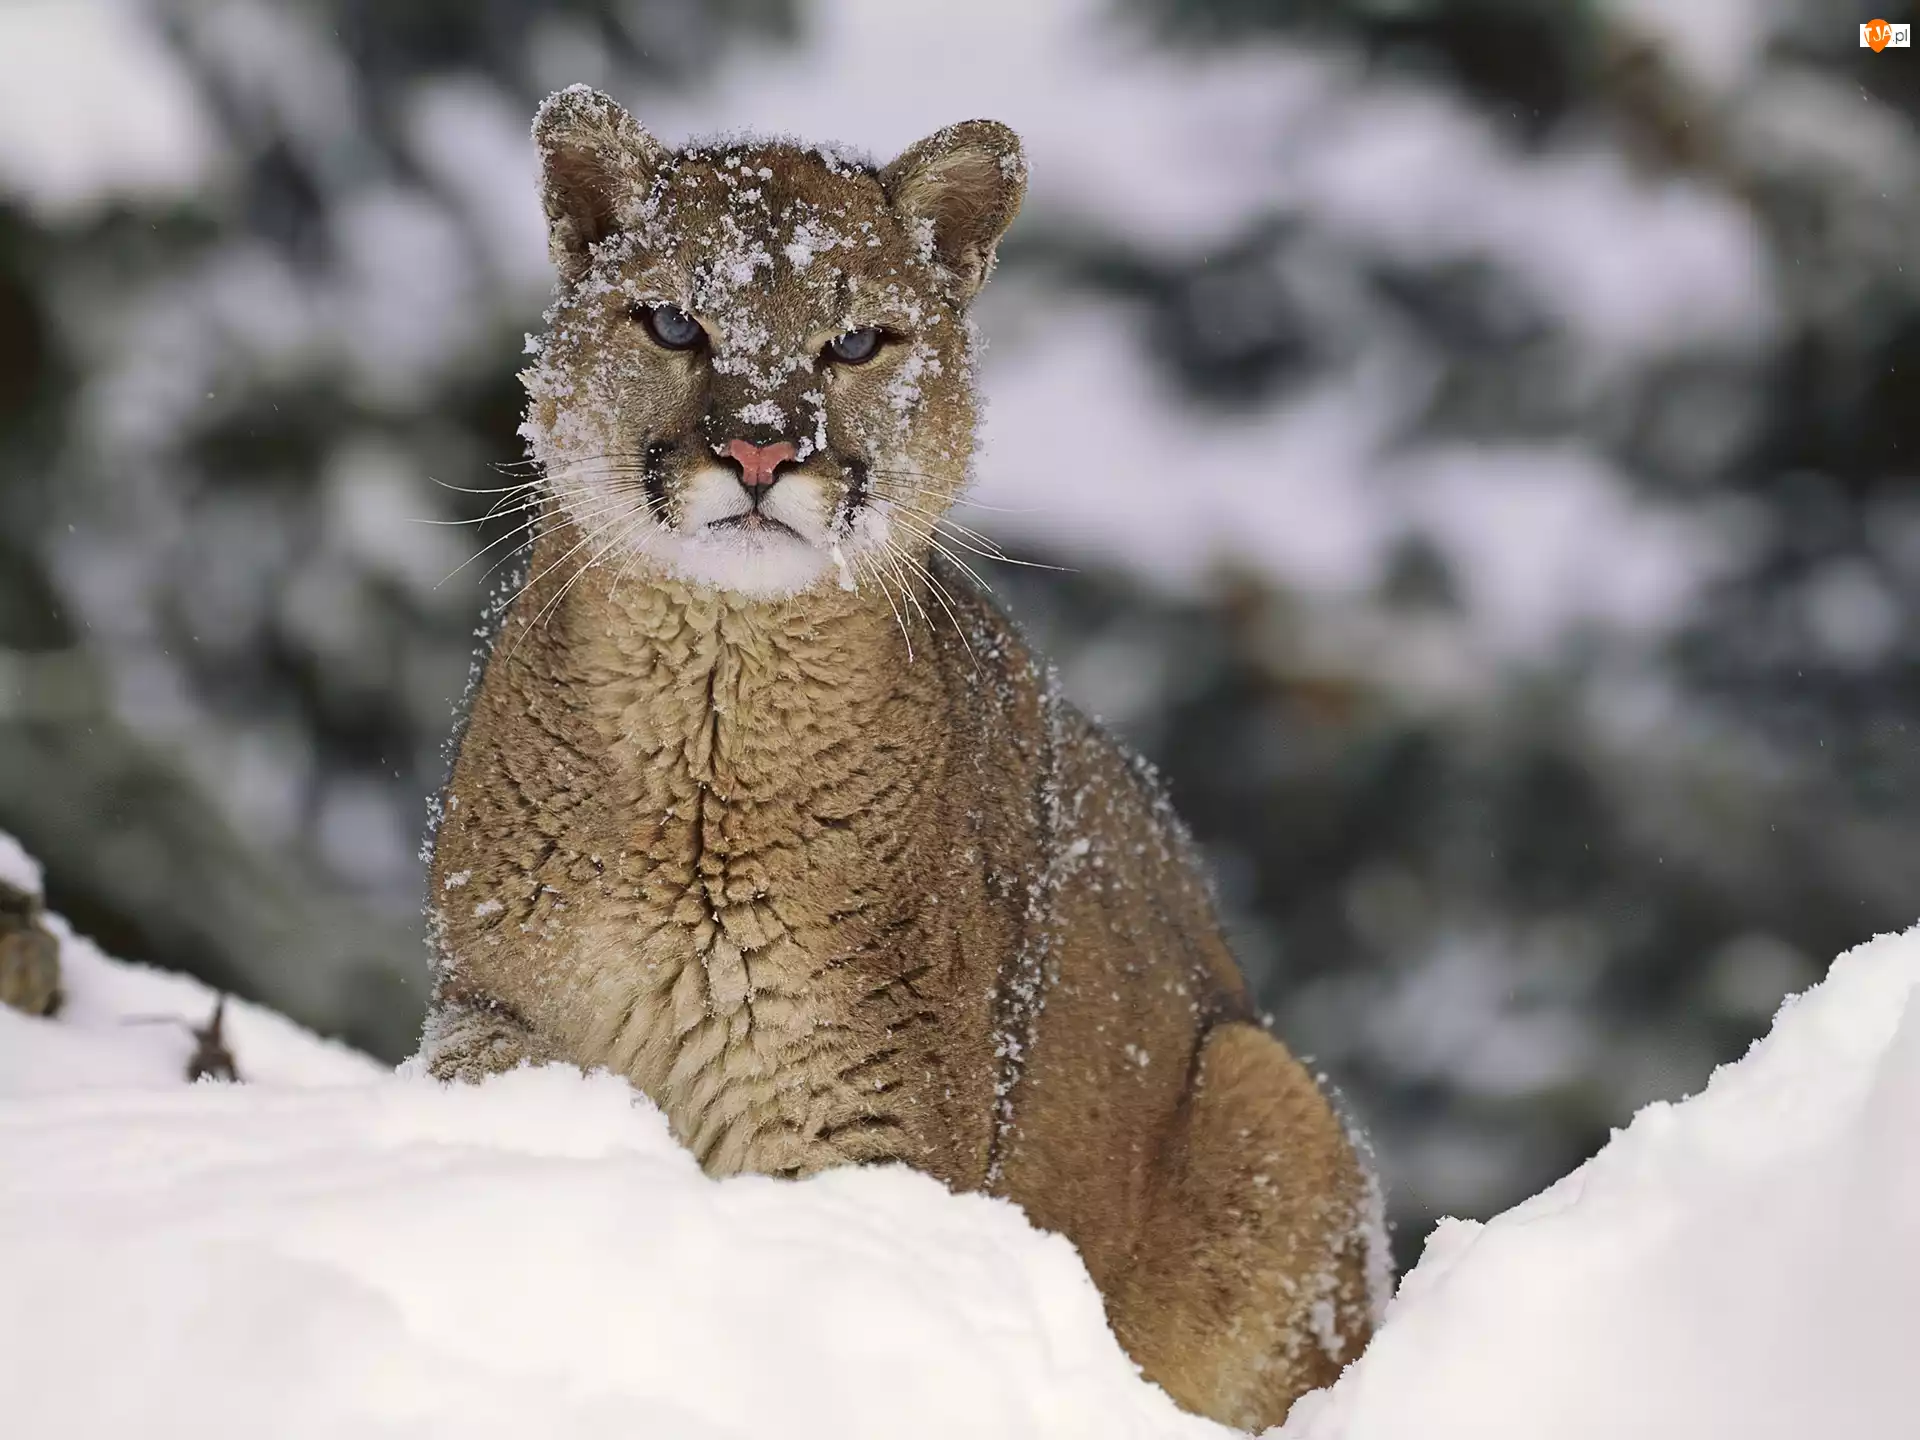 Śnieg, Puma